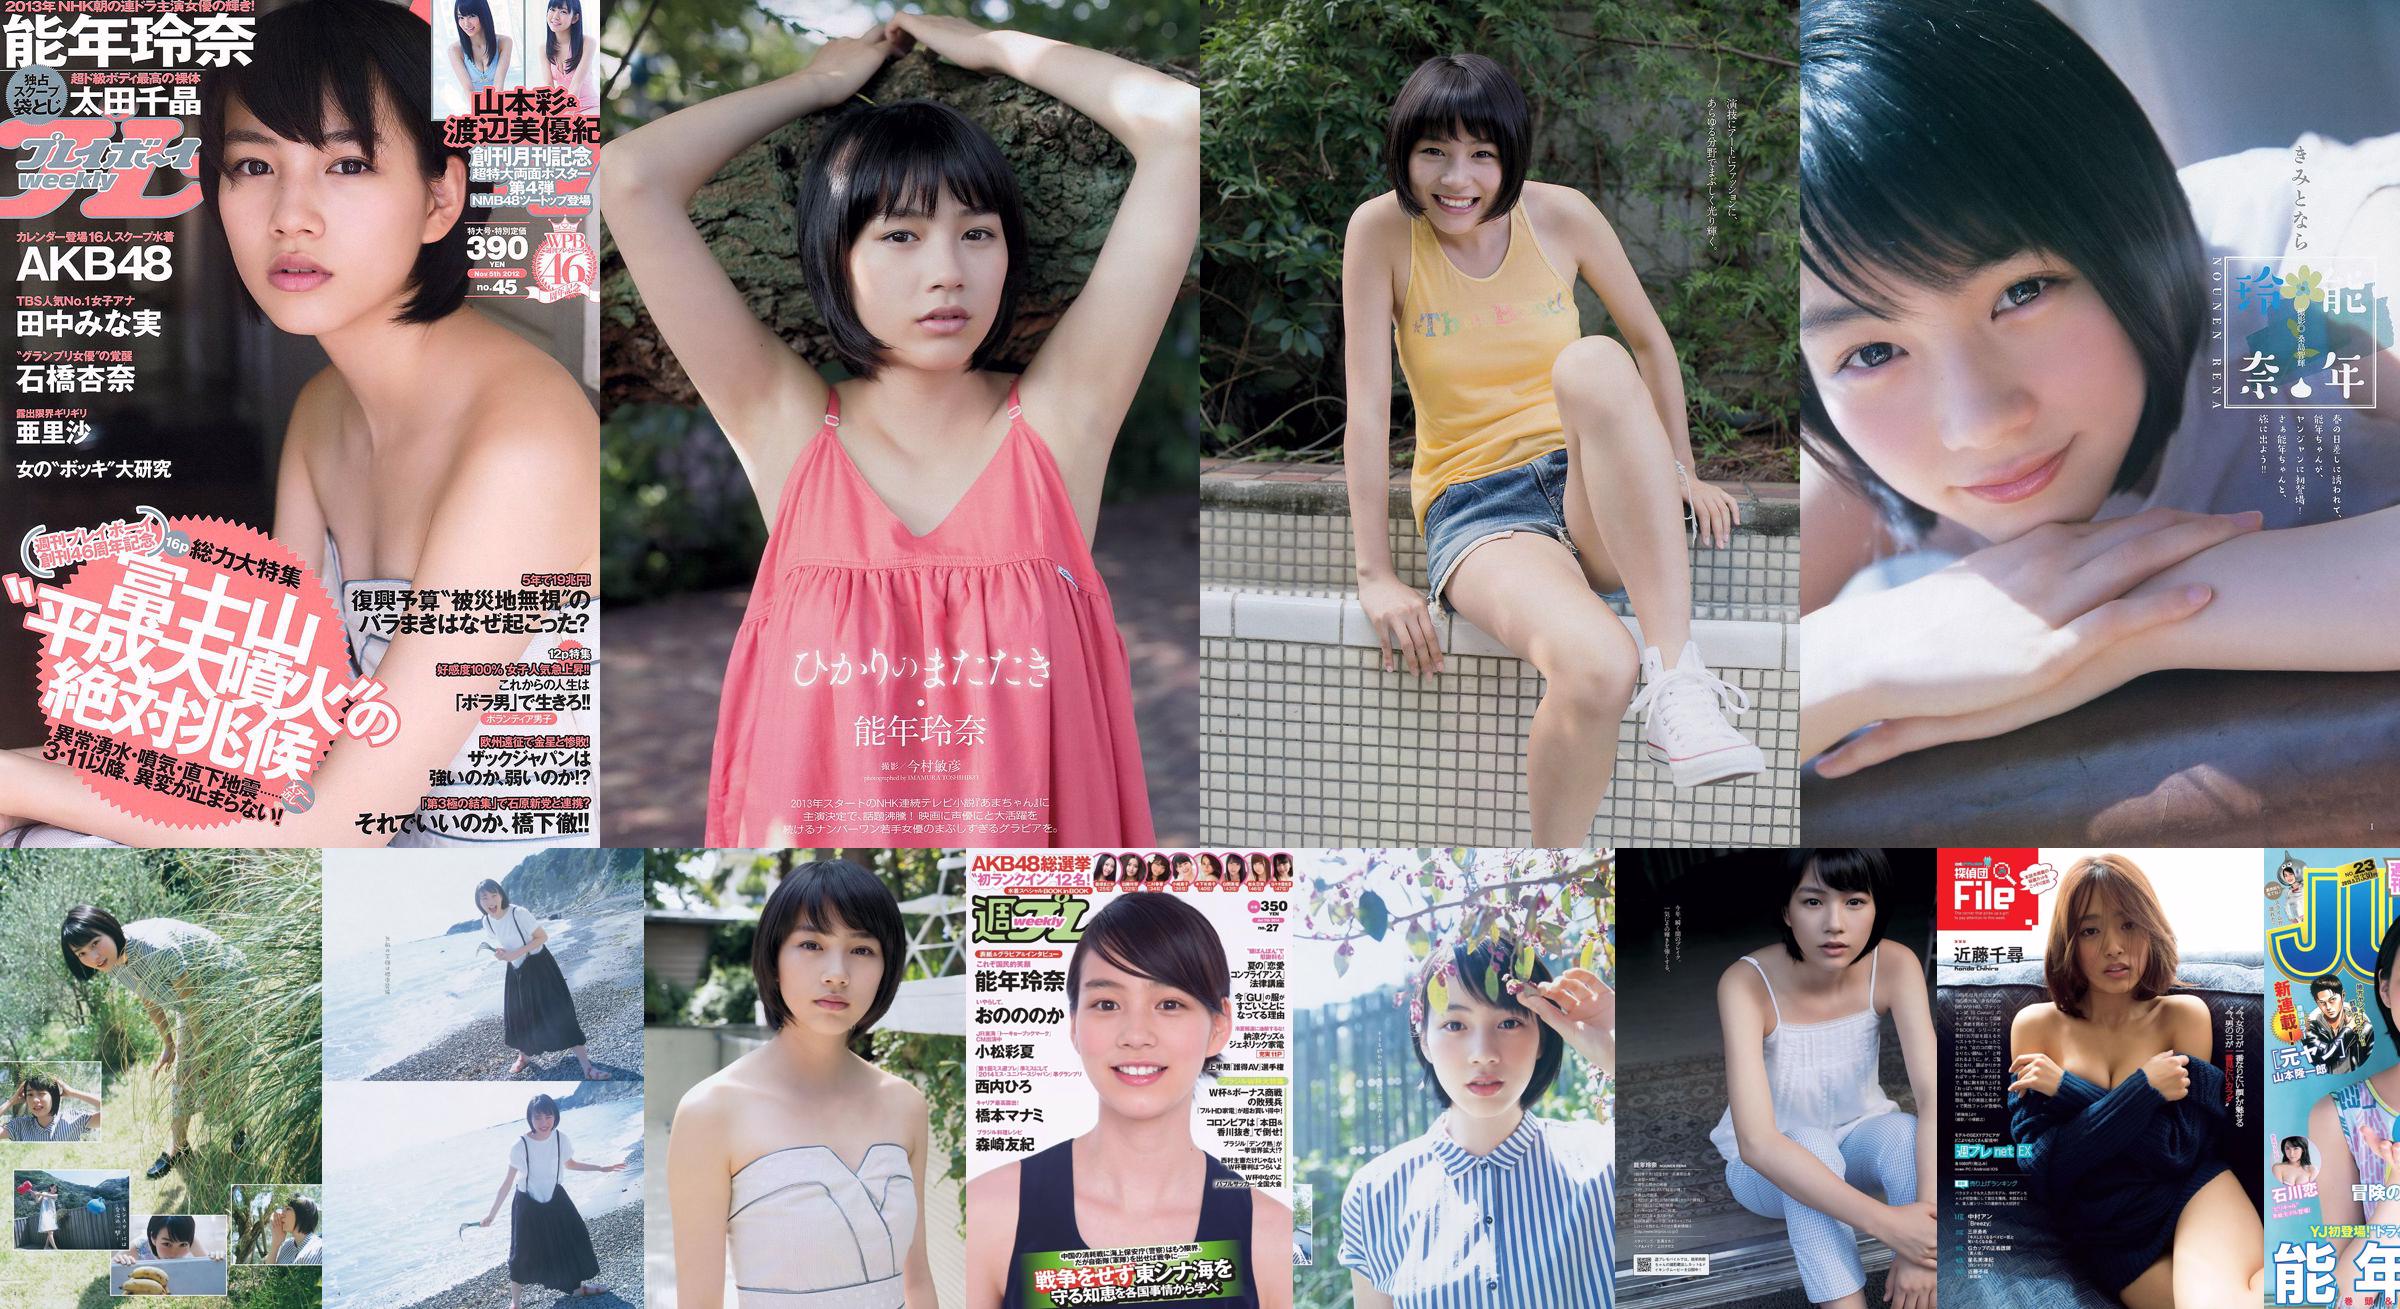 Rena Nonen AKB48 Anna Ishibashi Arisa Ili Chiaki Ota [Weekly Playboy] 2012 No.45 Photo No.3a62c2 Page 18